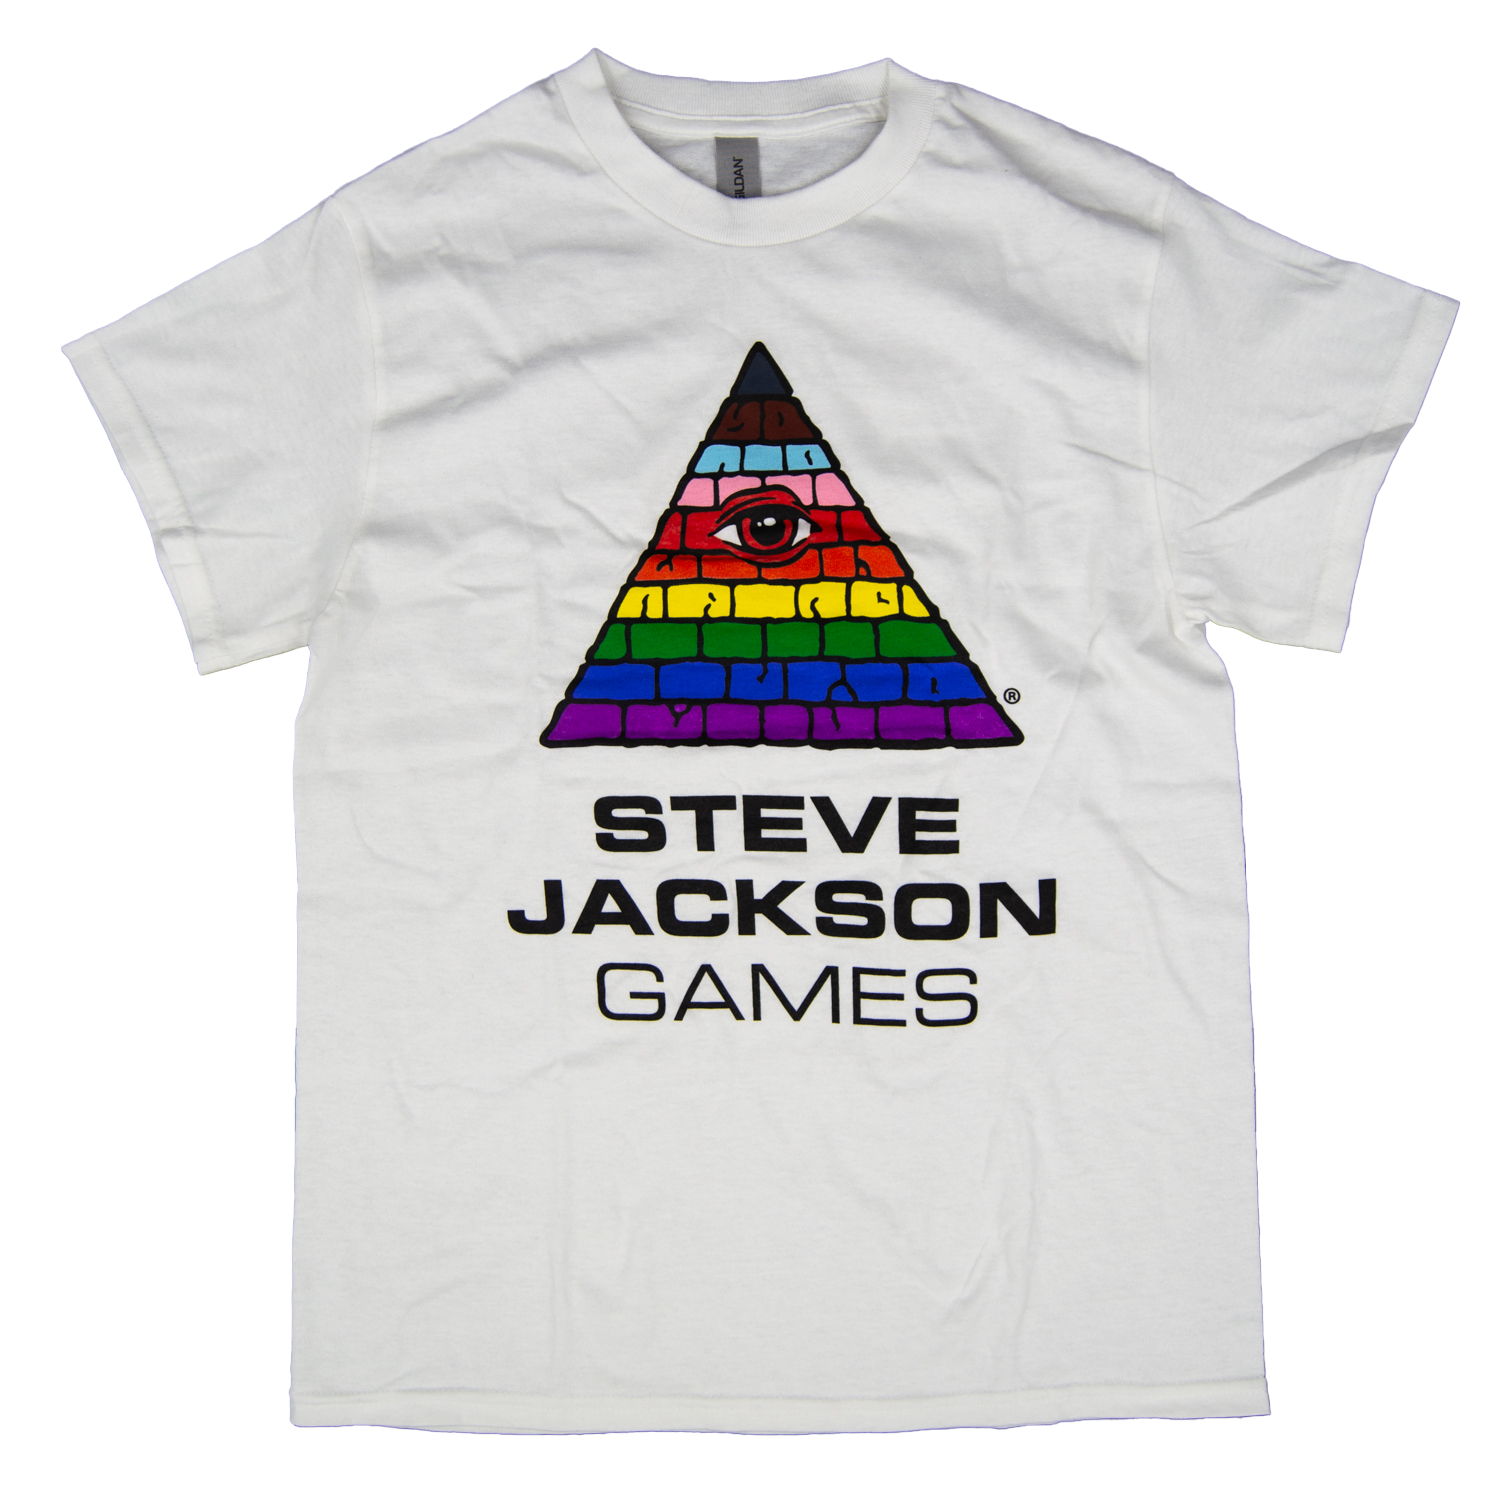 Rainbow Eye-in-Pyramid Pride Shirt